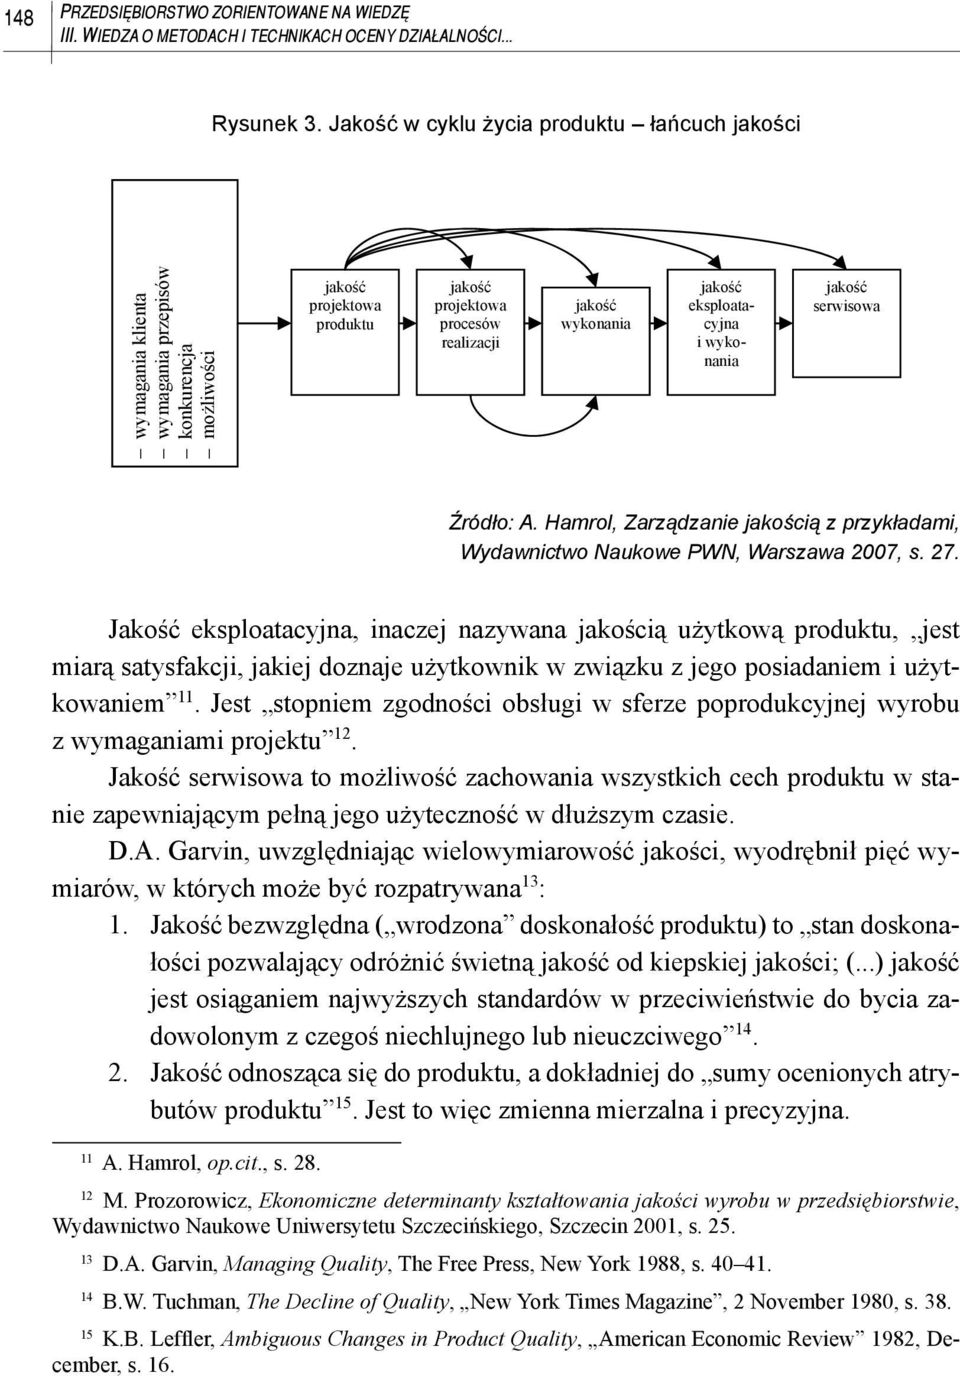 eksploatacyjna i wykonania jako serwisowa Źródło: A. Hamrol, Zarządzanie jakością z przykładami, Wydawnictwo Naukowe PWN, Warszawa 2007, s. 27.